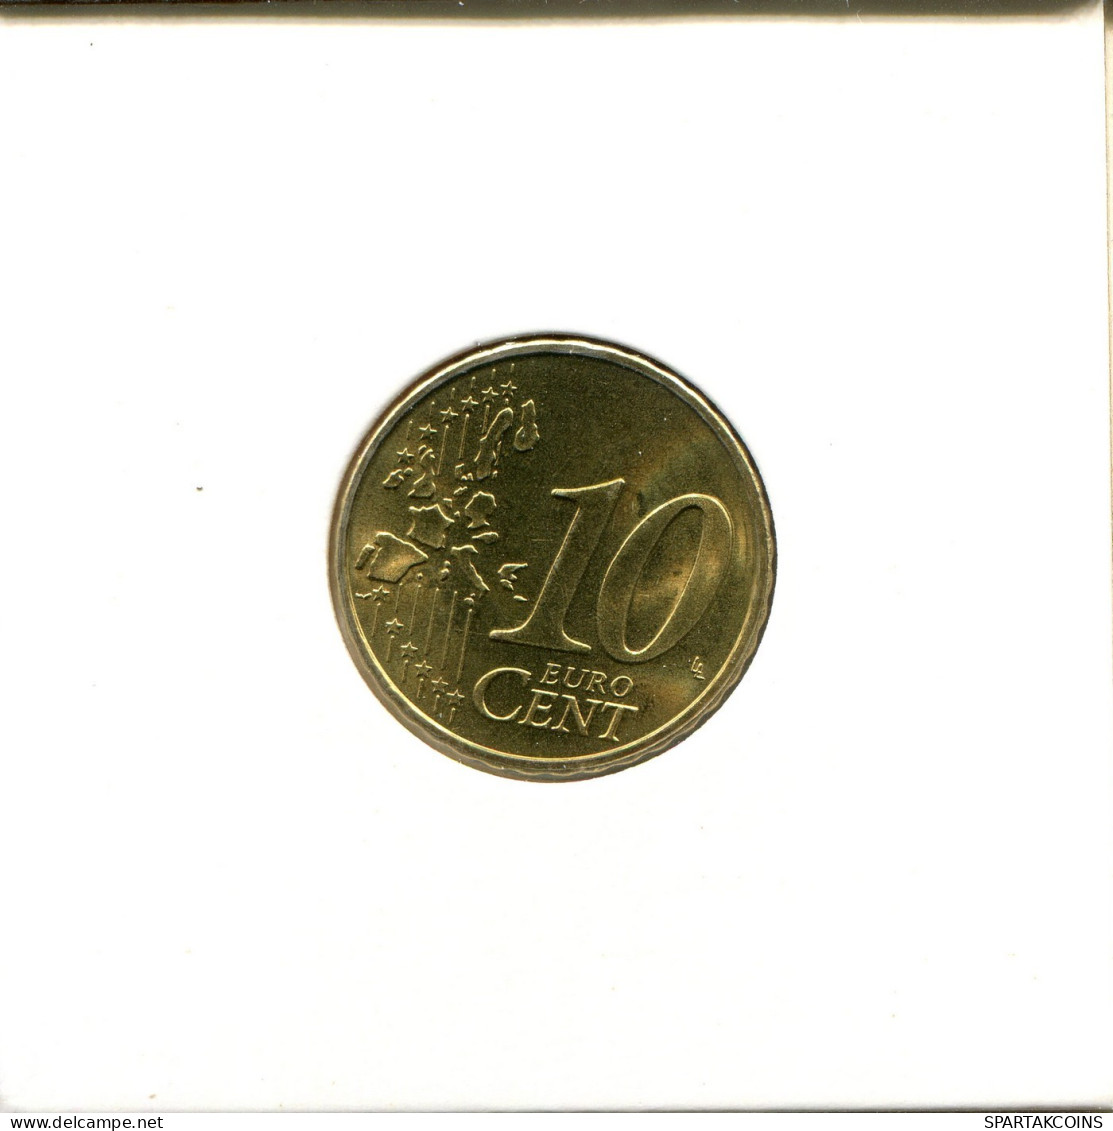 10 EURO CENTS 1999 NETHERLANDS Coin #EU273.U.A - Netherlands